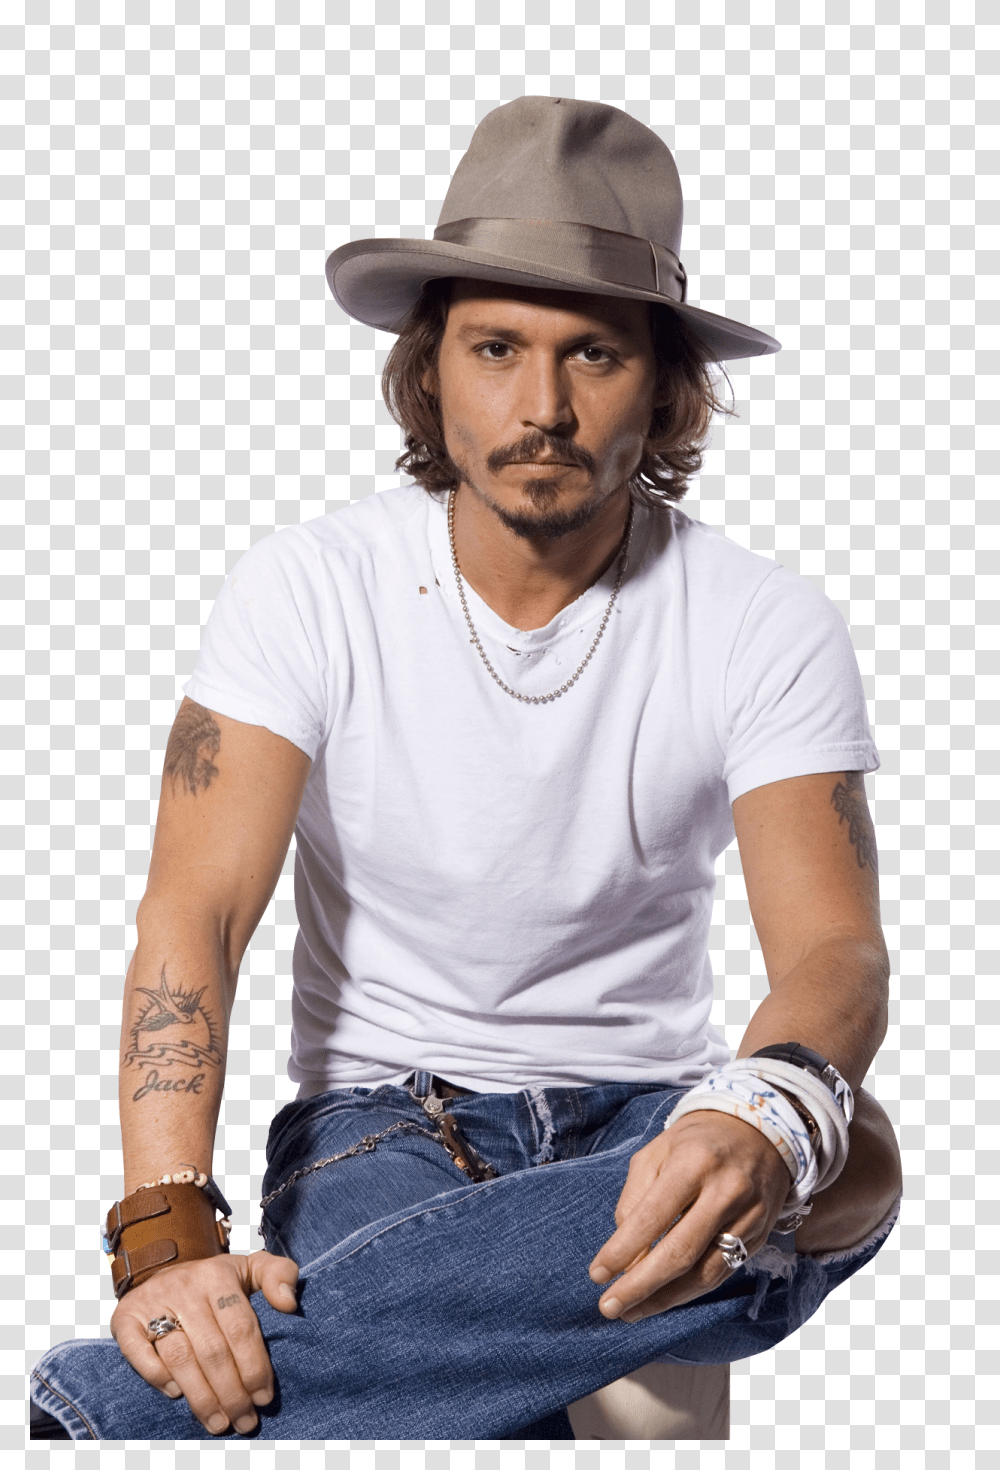 Johnny Depp Image, Celebrity, Apparel, Person Transparent Png